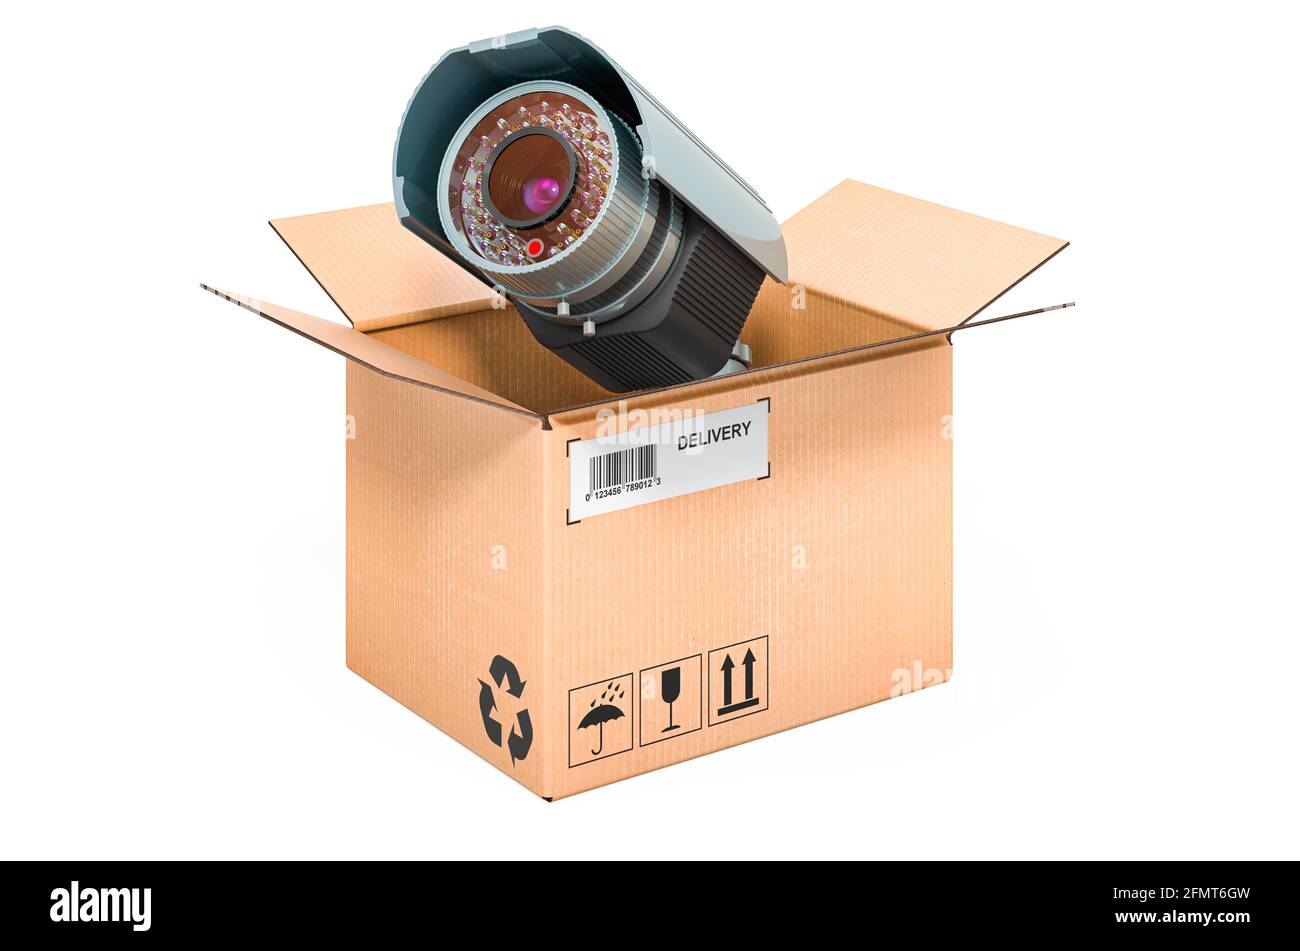 Telecamera di sicurezza all'interno della scatola di cartone, concetto di  consegna. Rendering 3D isolato su sfondo bianco Foto stock - Alamy